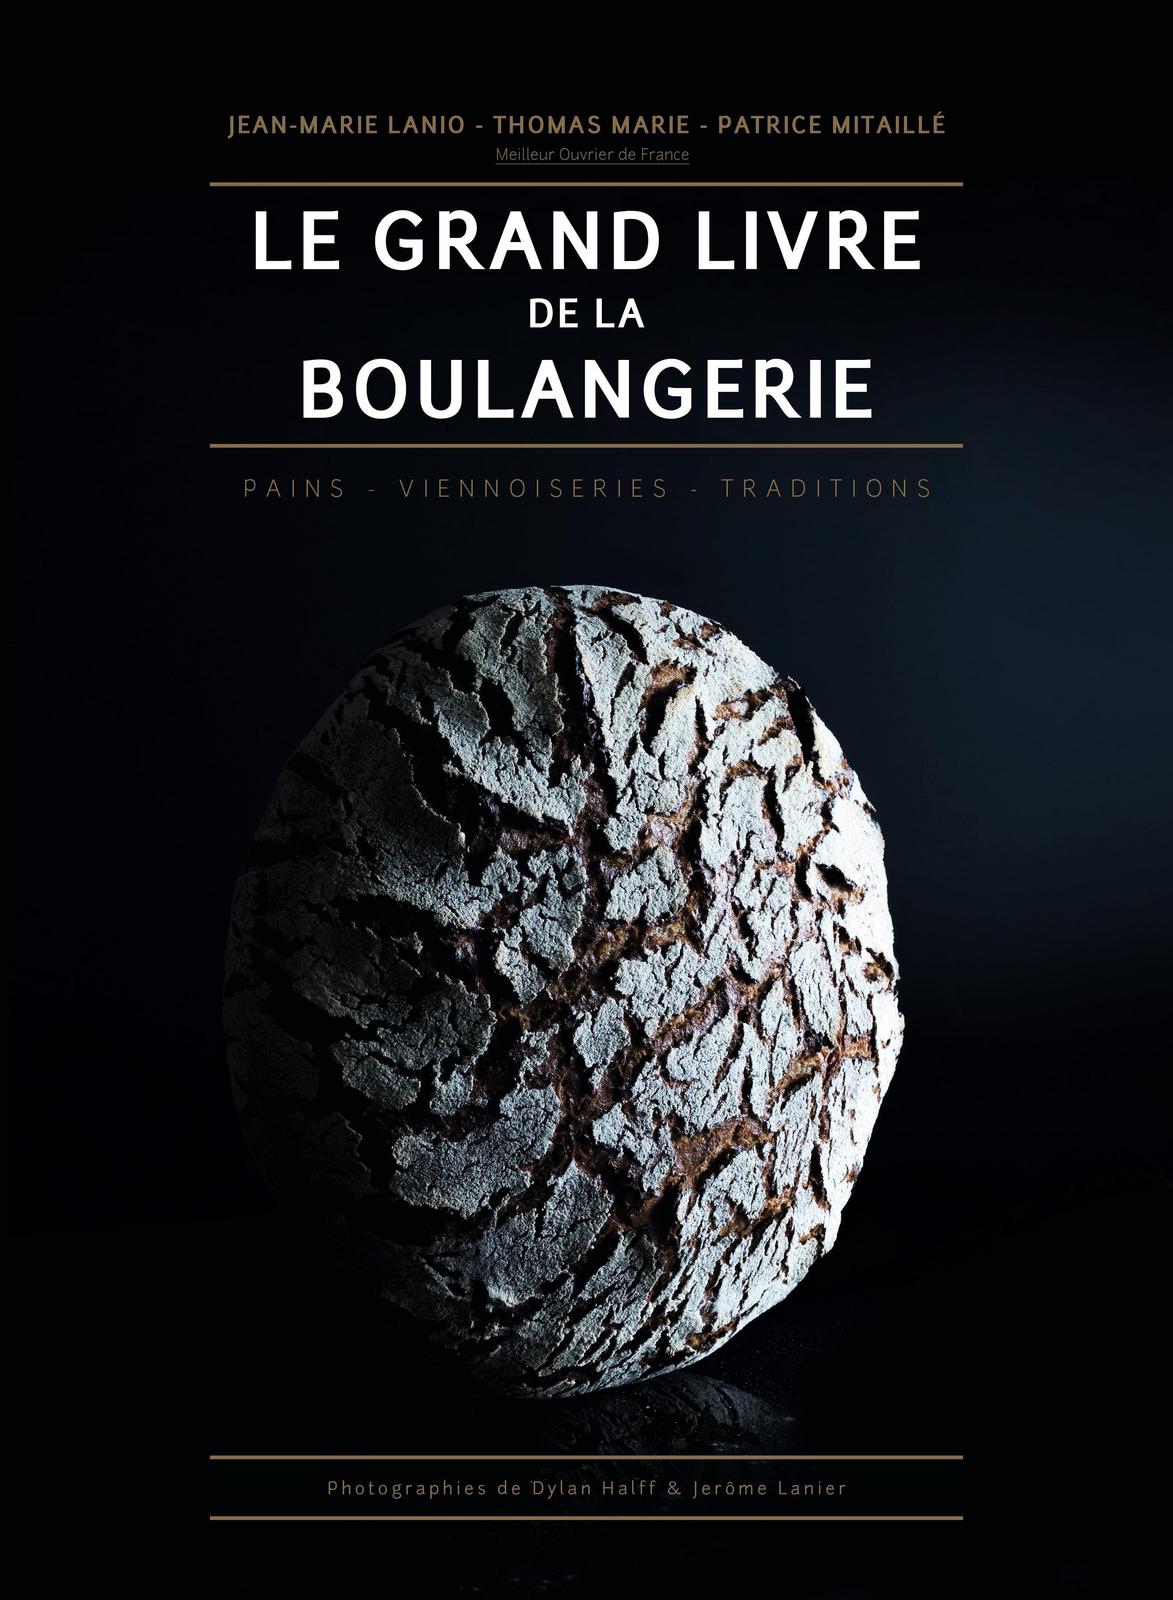 Jean-Marie Lanio, Patrice Mitaillé, Marie Thomas: Le grand livre de la boulangerie : pains, viennoiseries, traditions (French language, 2017)